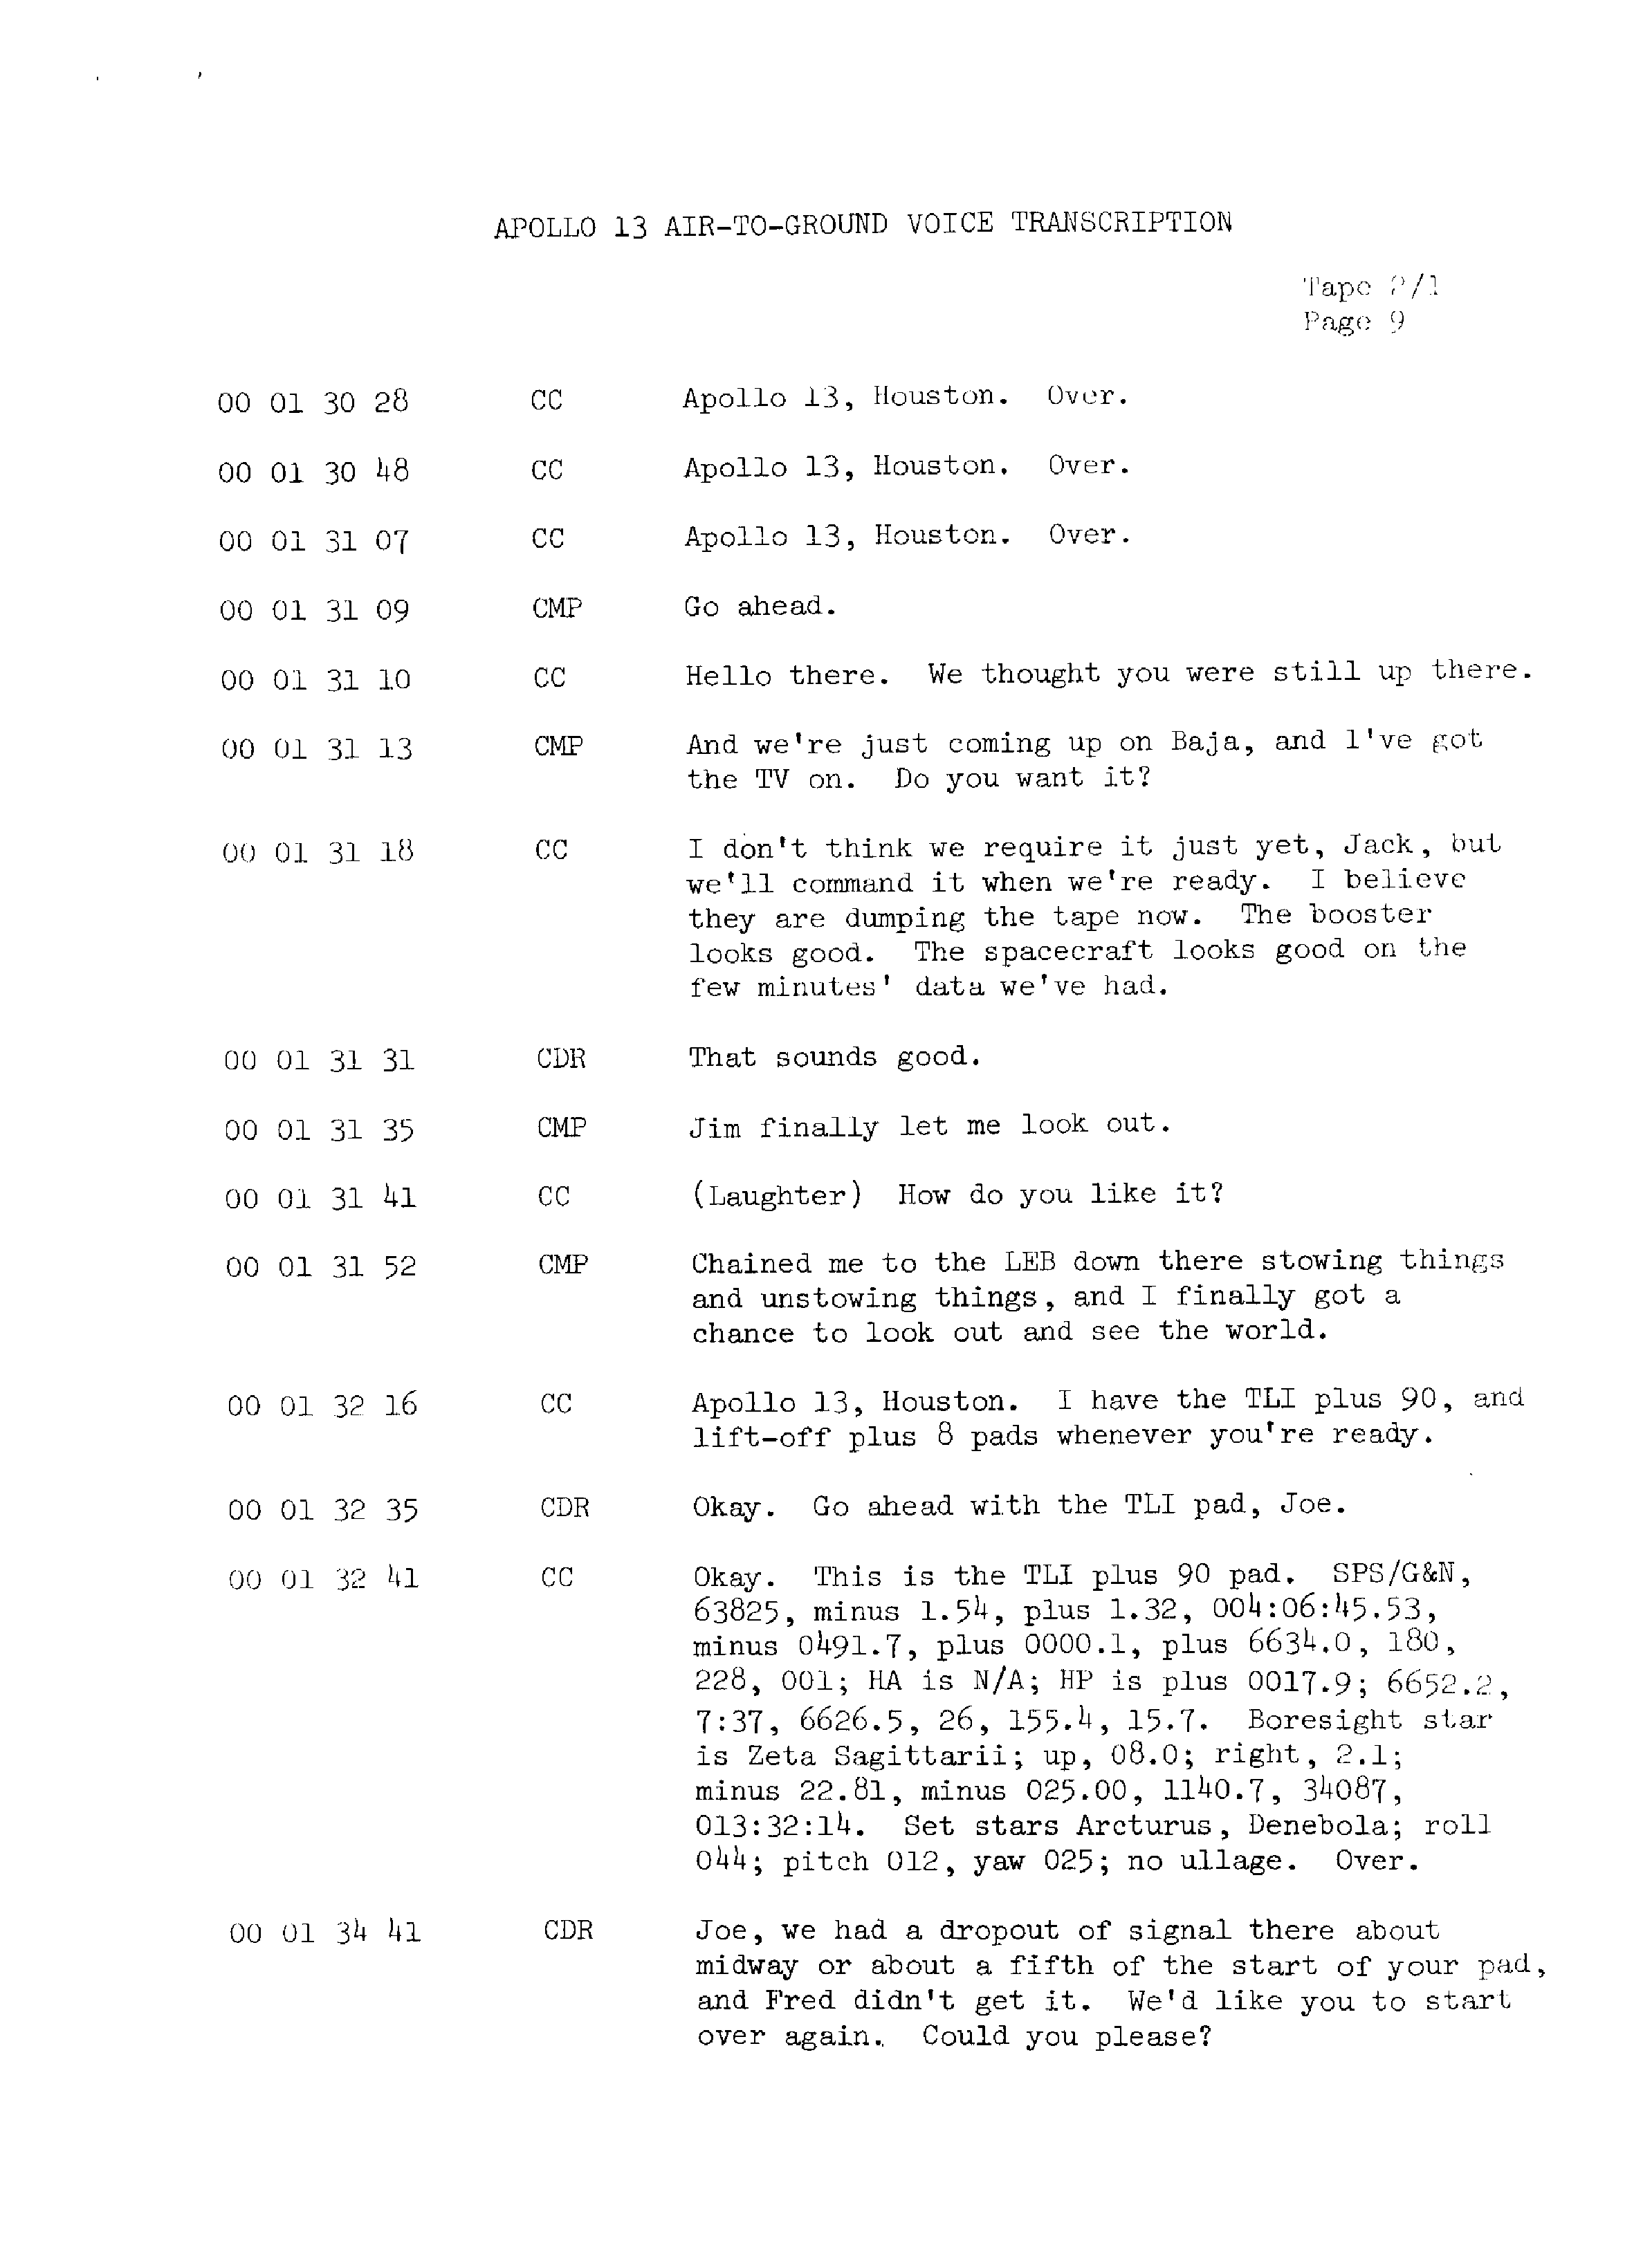 Page 16 of Apollo 13’s original transcript